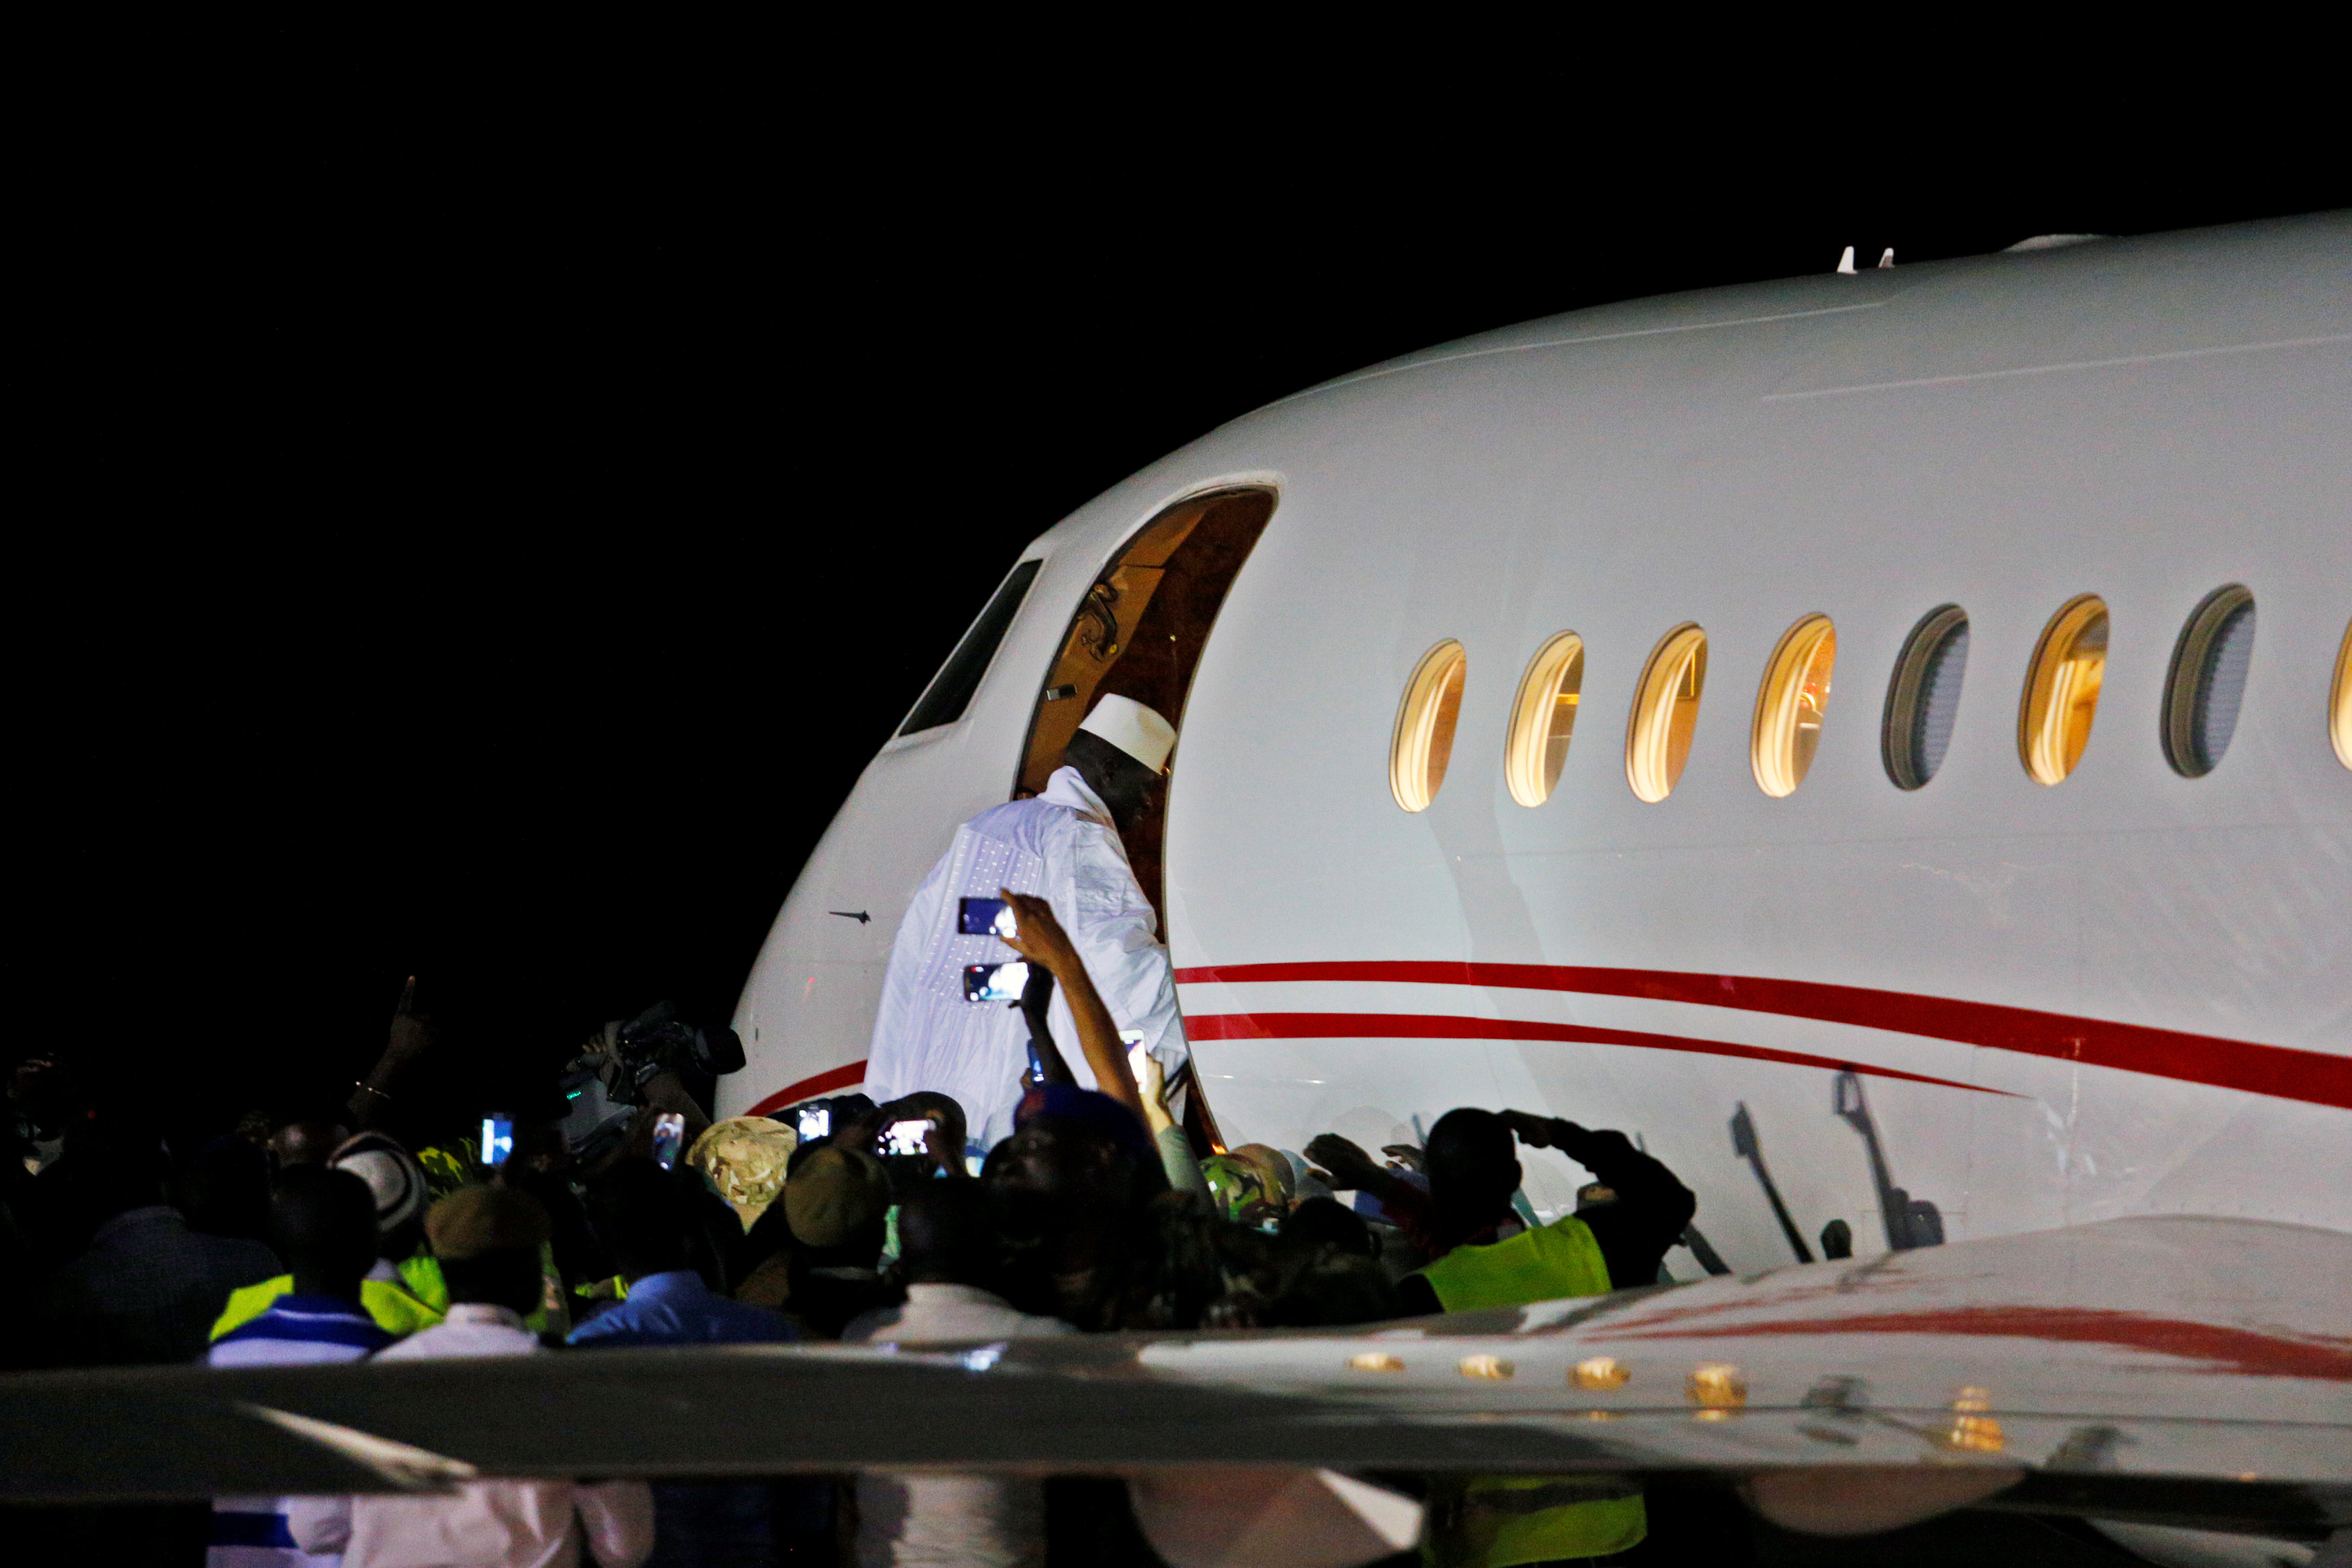 ركوب يحيى جامع رئيس جامبيا المنتهية ولايته للطائرة للسفر